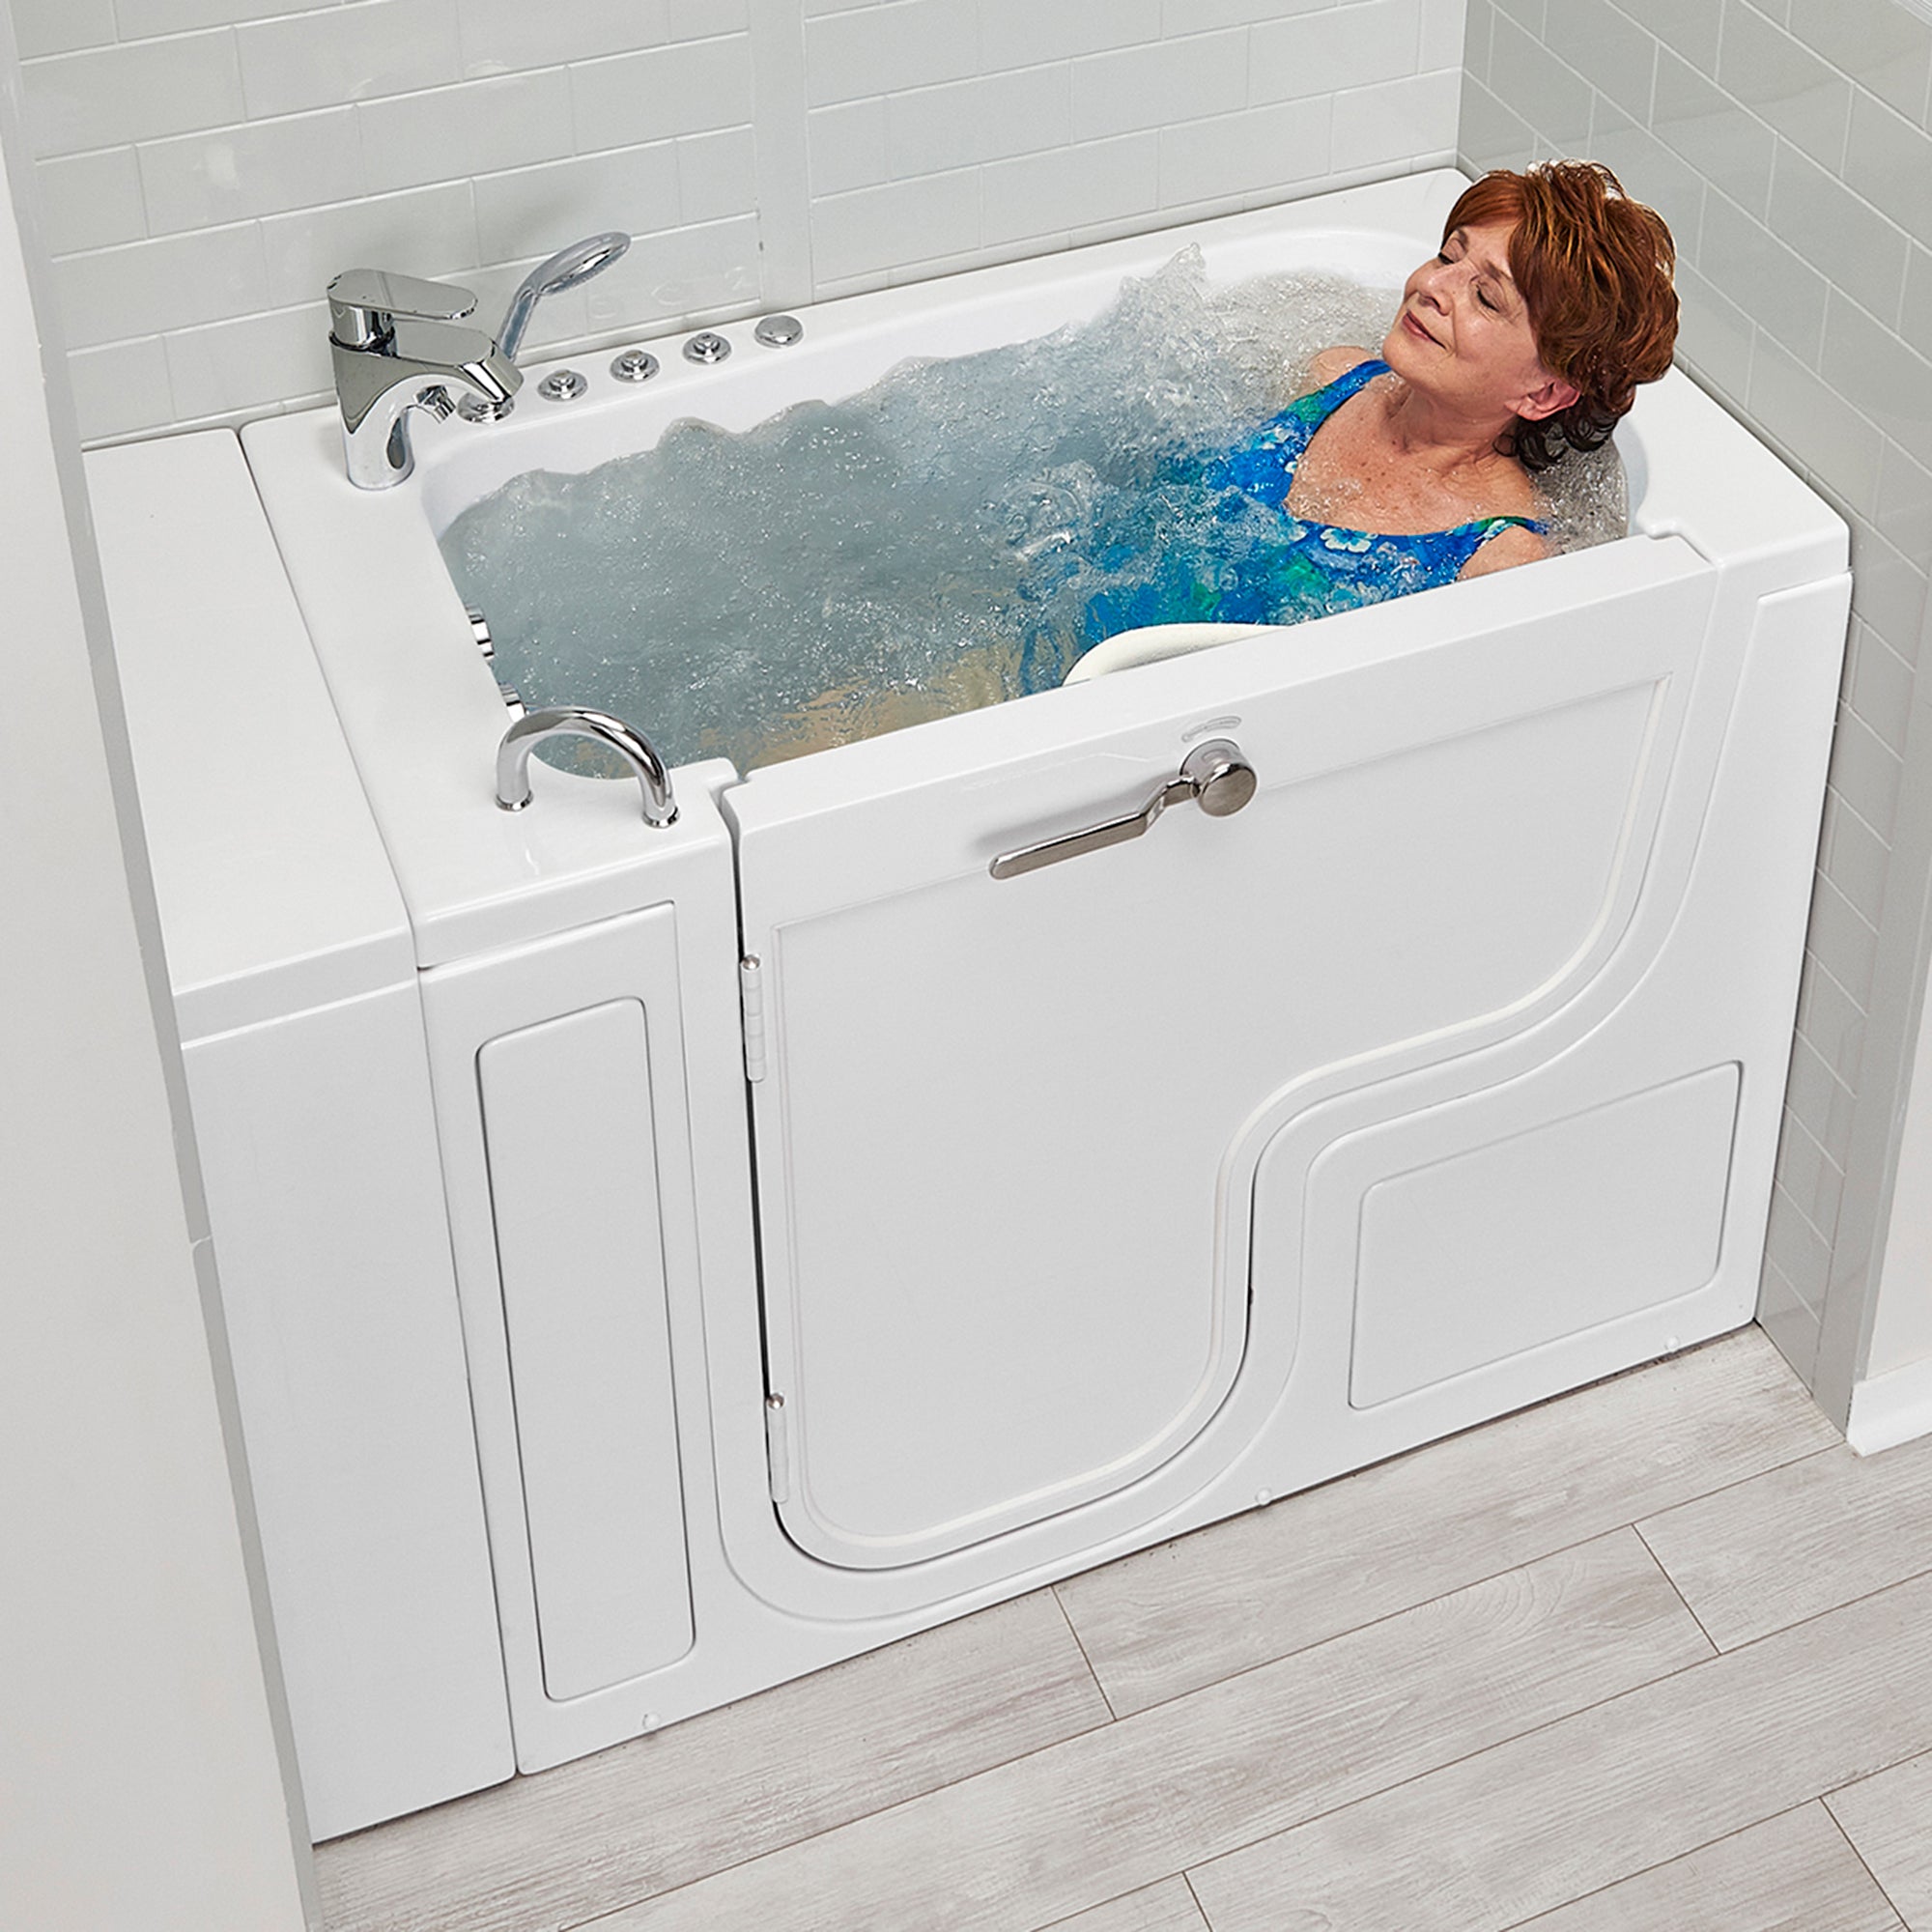 Ellas Bubbles Walk In Tubs - Acrylic Bathtubs with Door